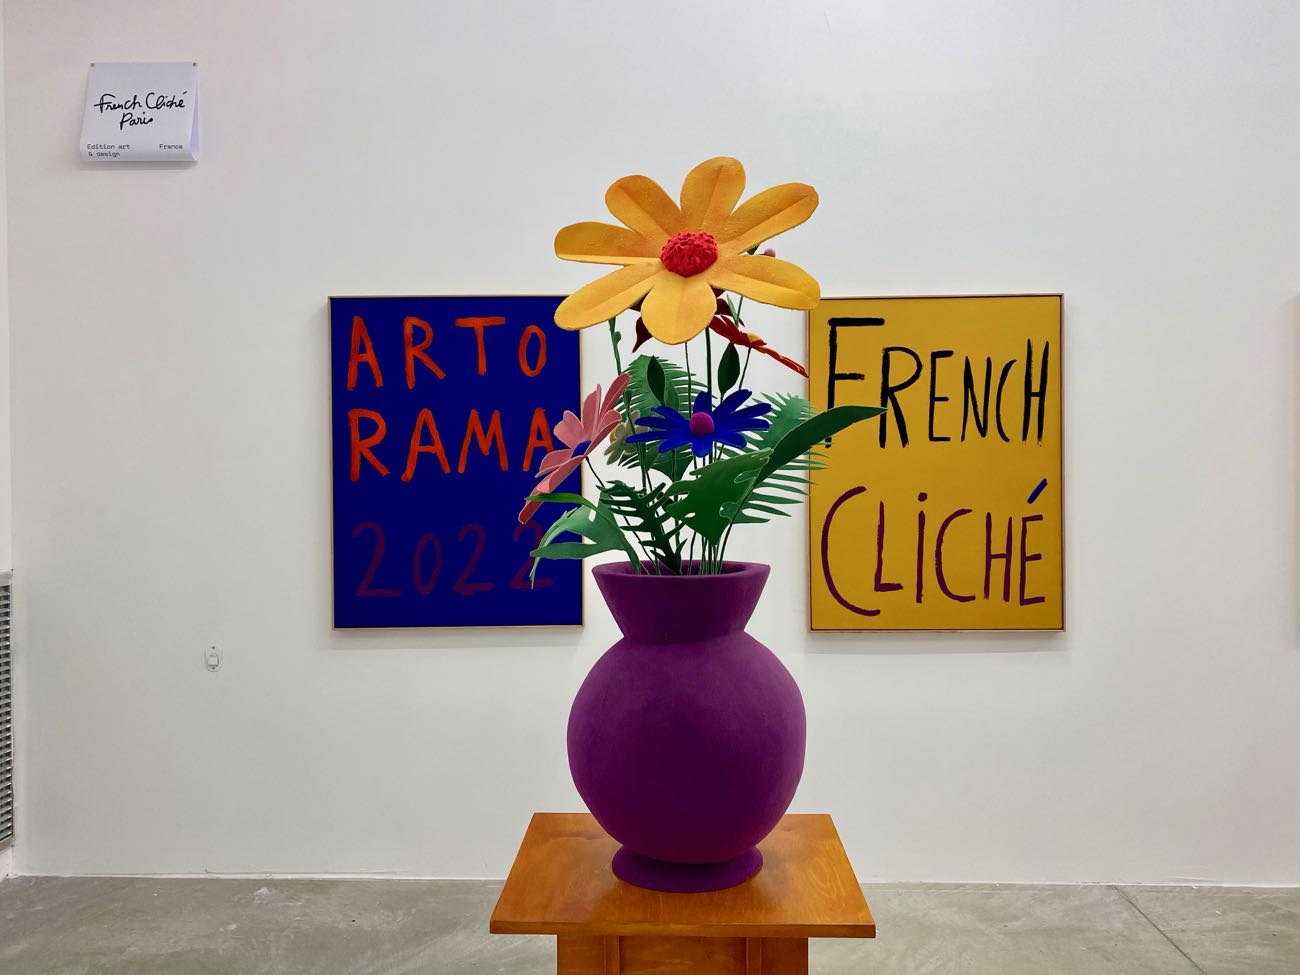 Art-O-Rama est un salon internationale d’art contemporain situé à la Friche la Belle de Mai à Marseille (French Cliché)